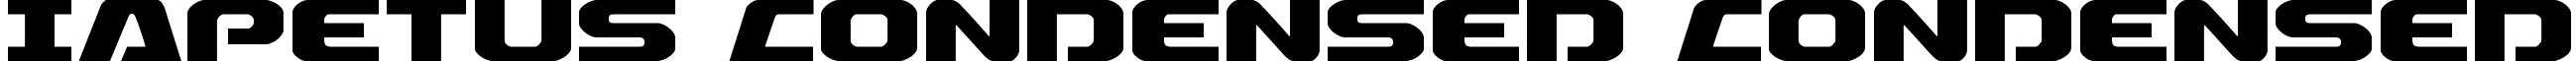 Iapetus Condensed Condensed font - Iapetus Condensed Condensed.ttf